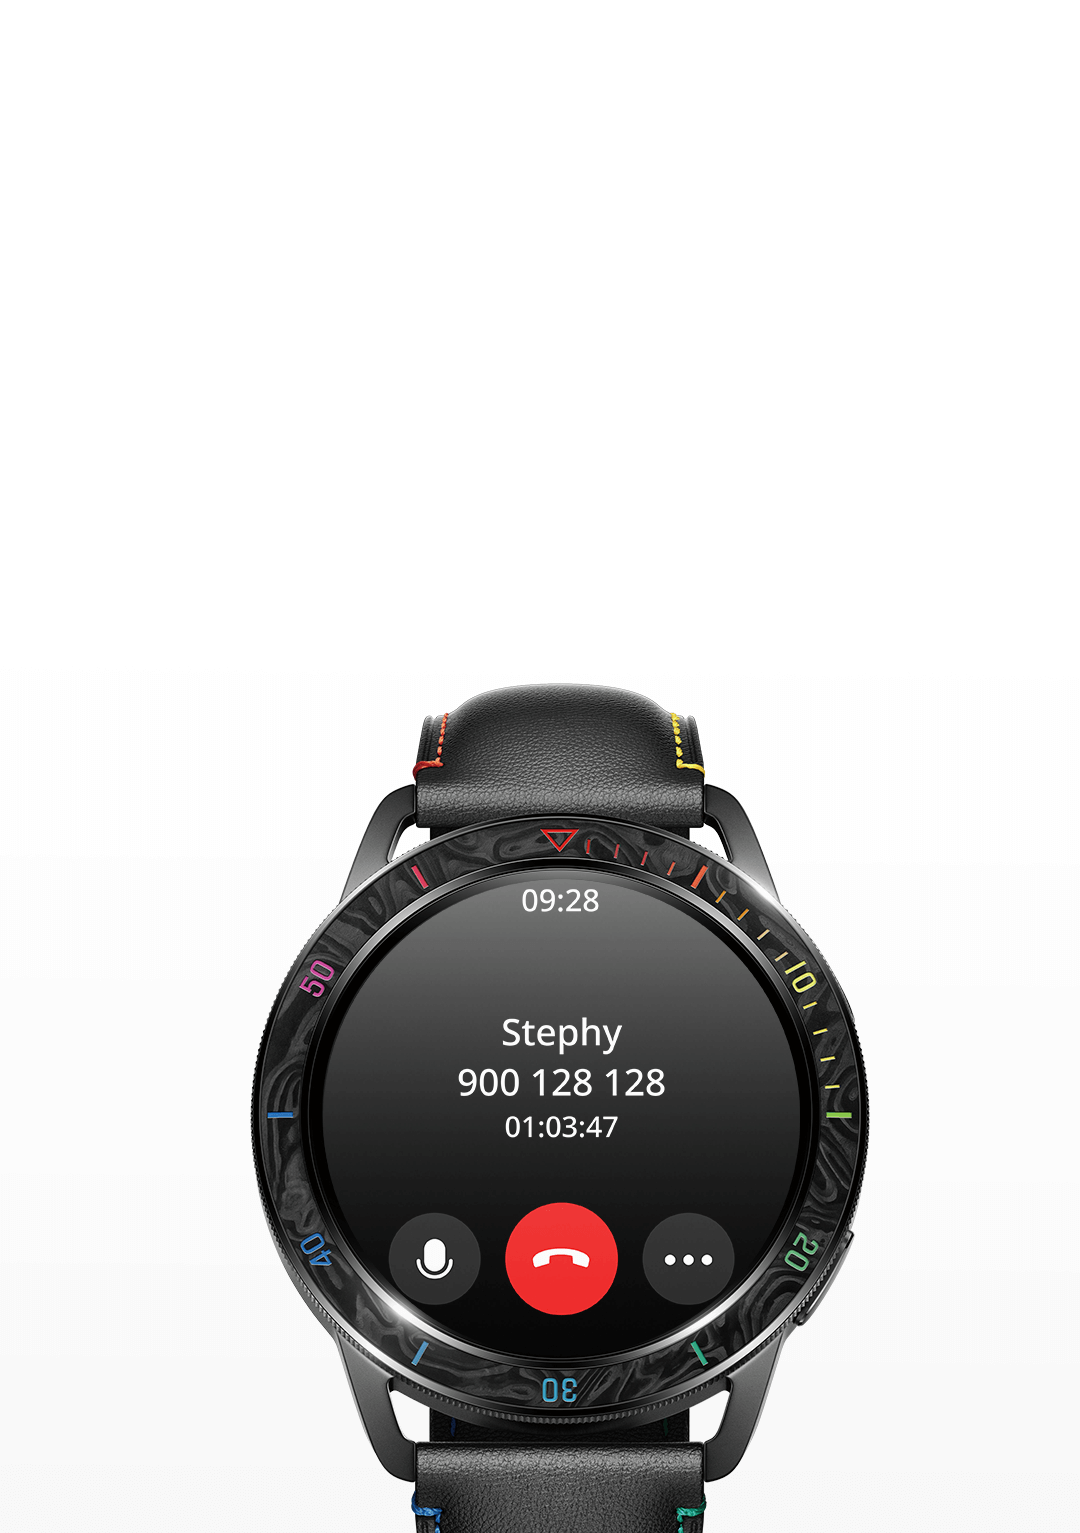 Xiaomi Watch S3 w naszych rękach – pierwsze wrażenia po kilku